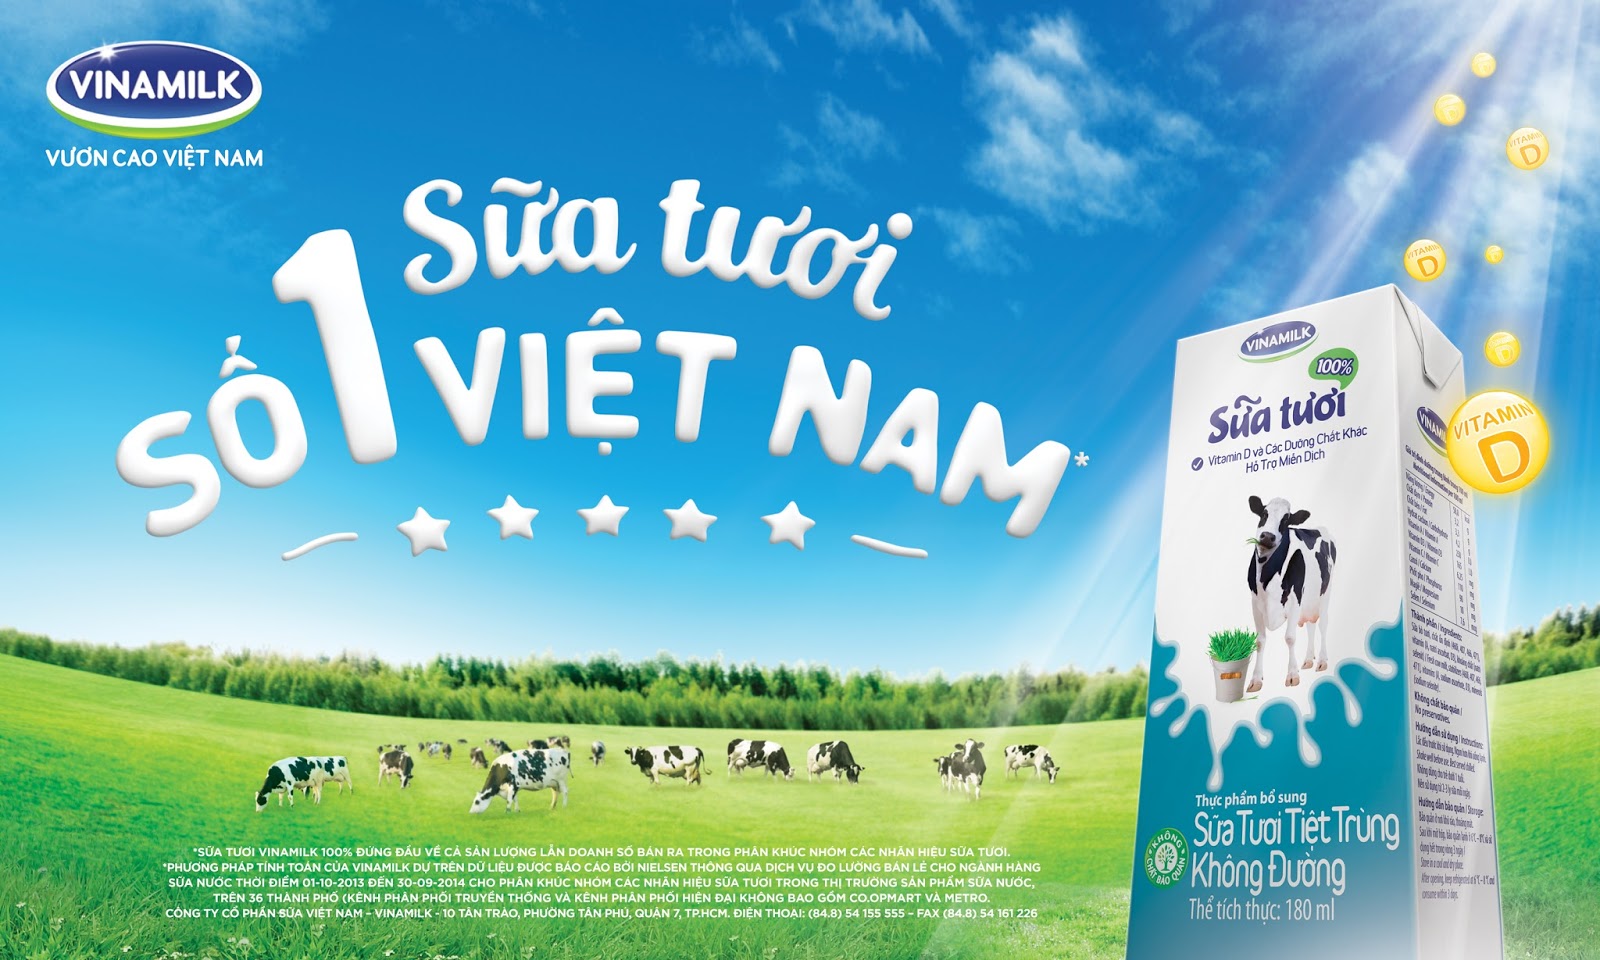 Tổng quan về Công ty Cổ phần sữa Việt Nam Vinamilk